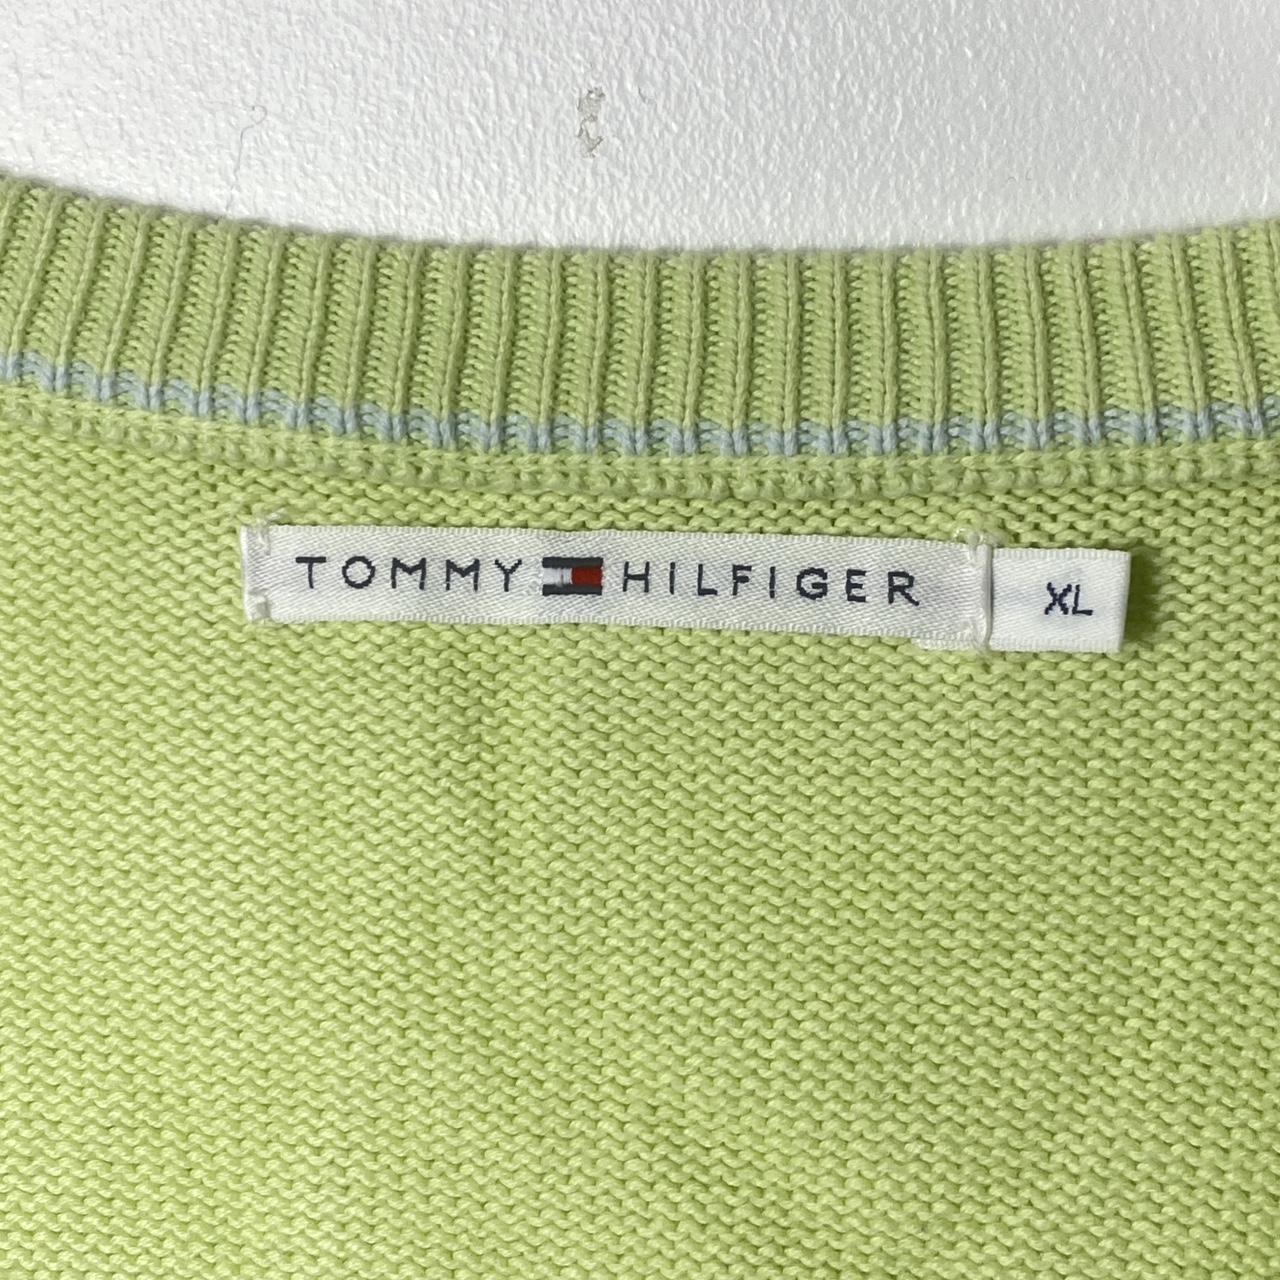 Tommy Hilfiger Jumper Green v neck with logo on... - Depop